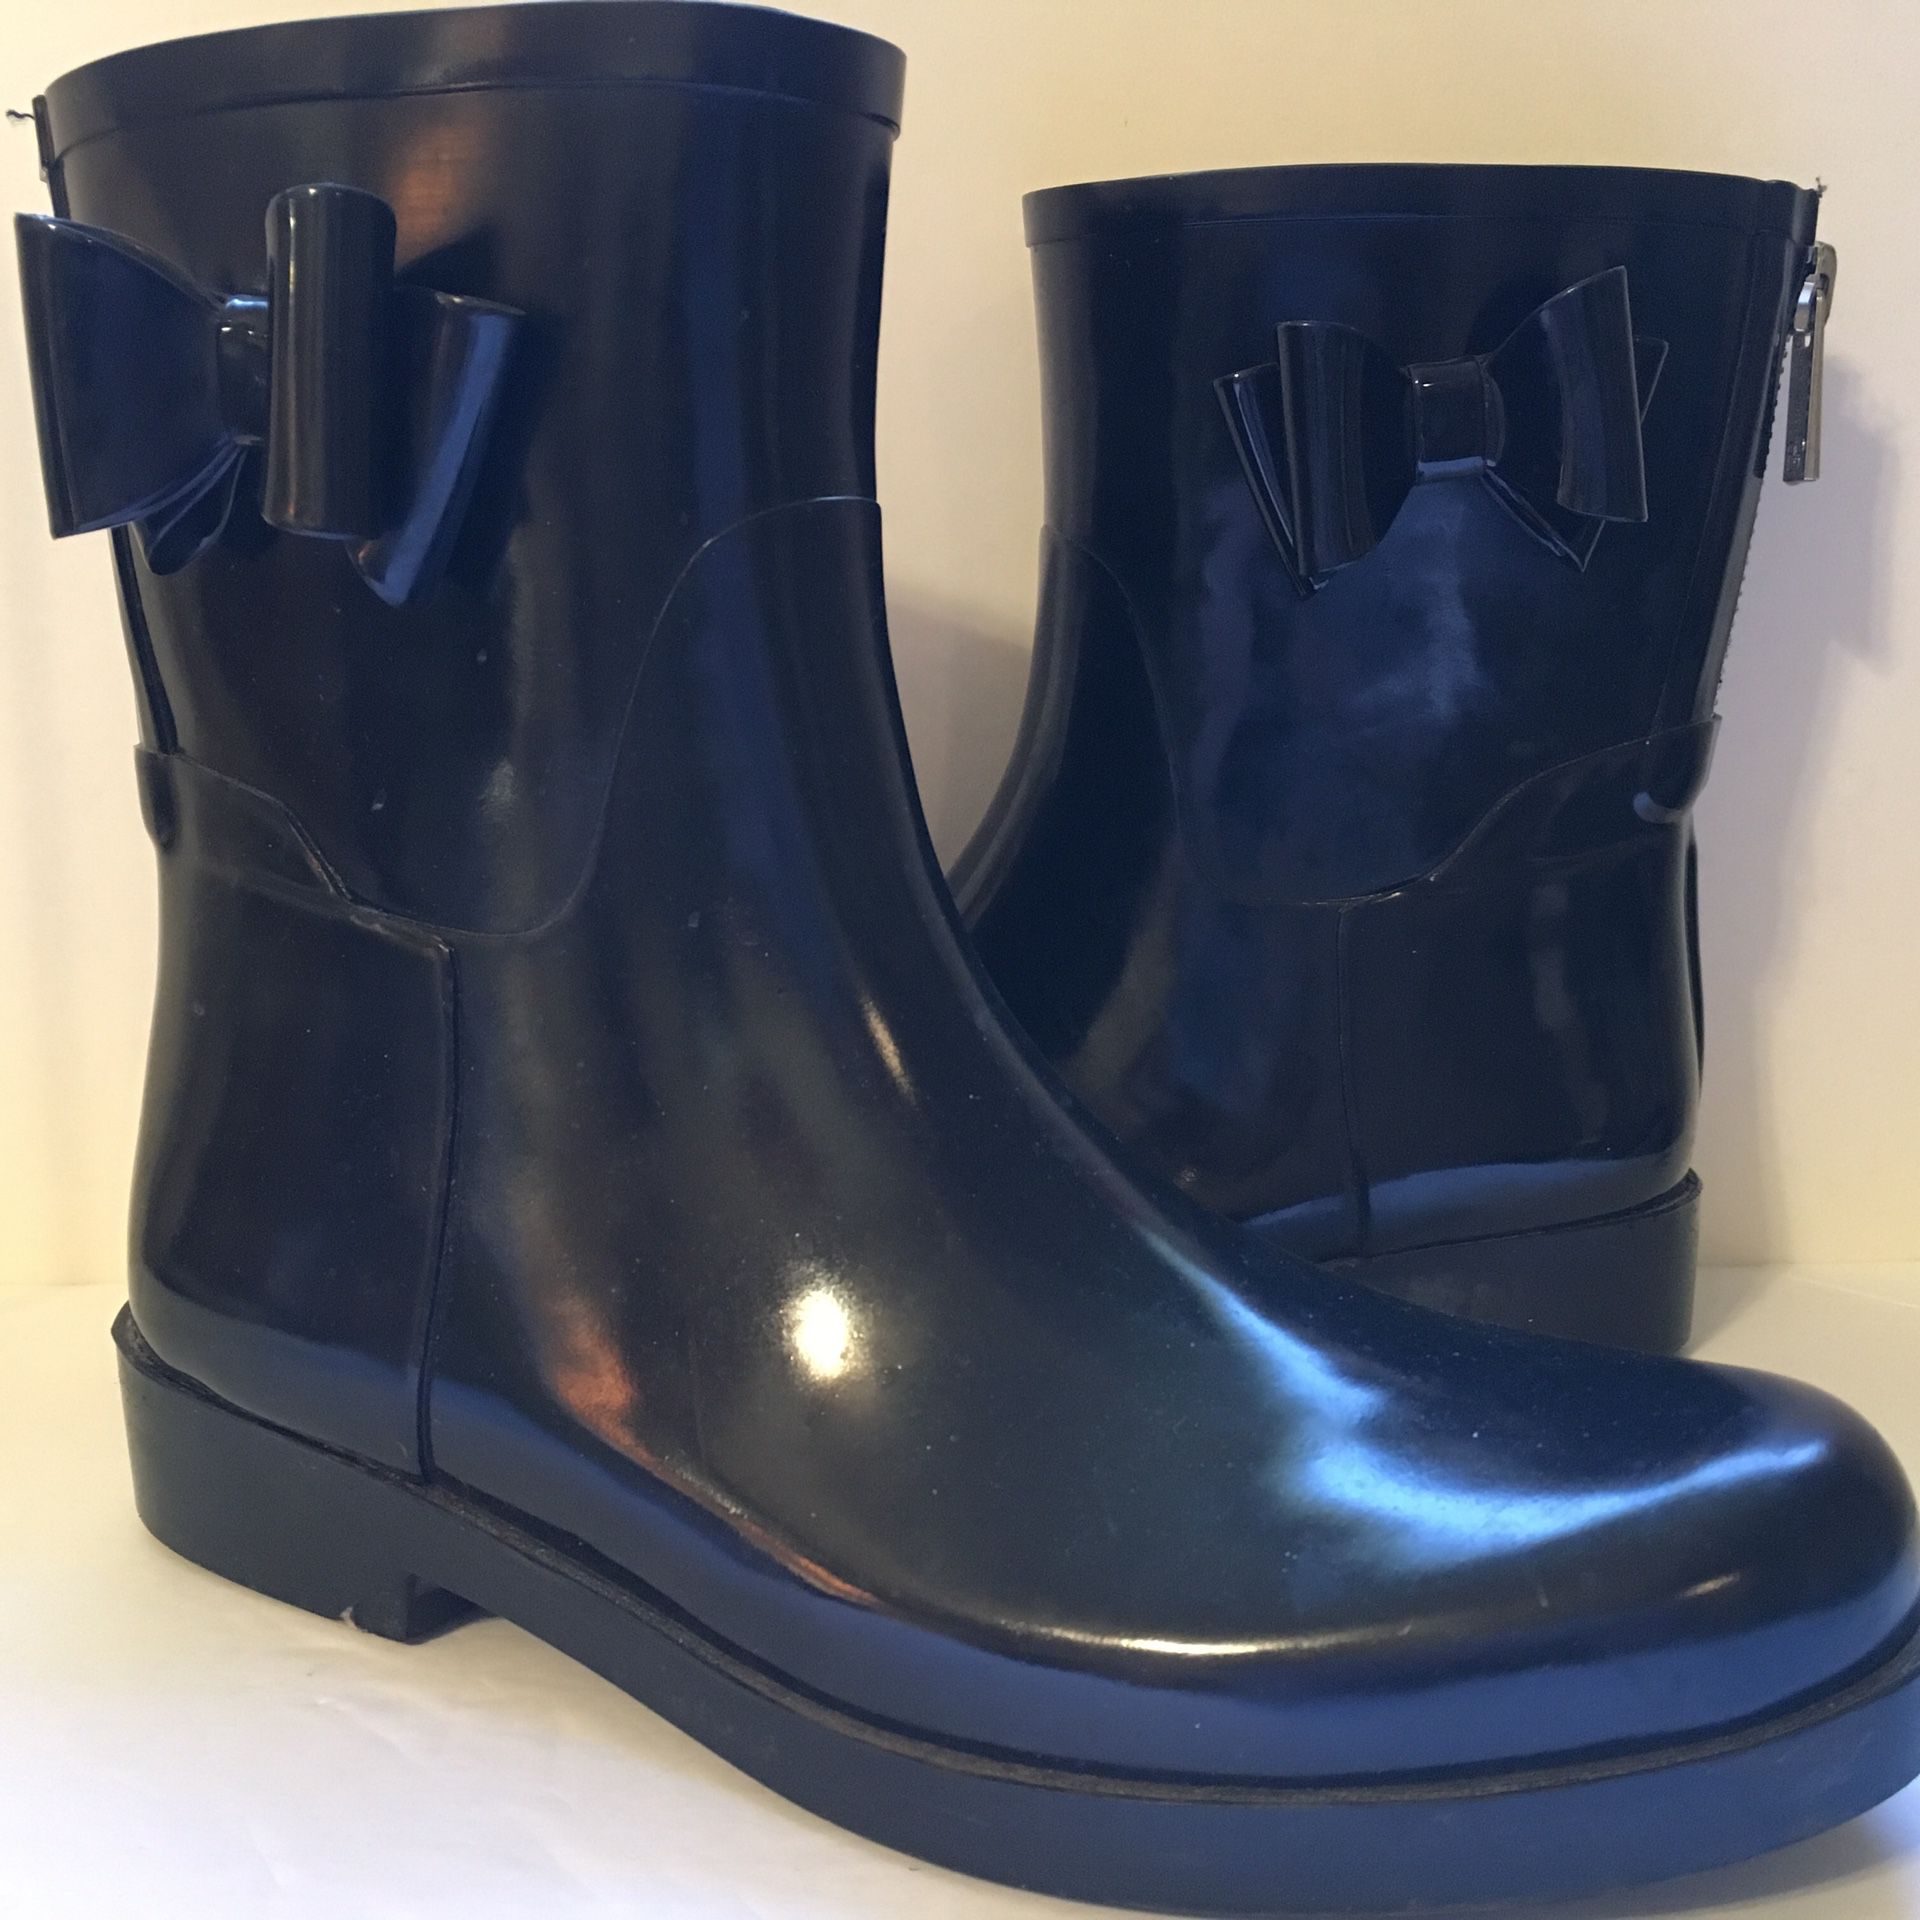 Jessica Simpson Black Rubber Ankle Rain Garden Boots Back Zip SZ 9M Women